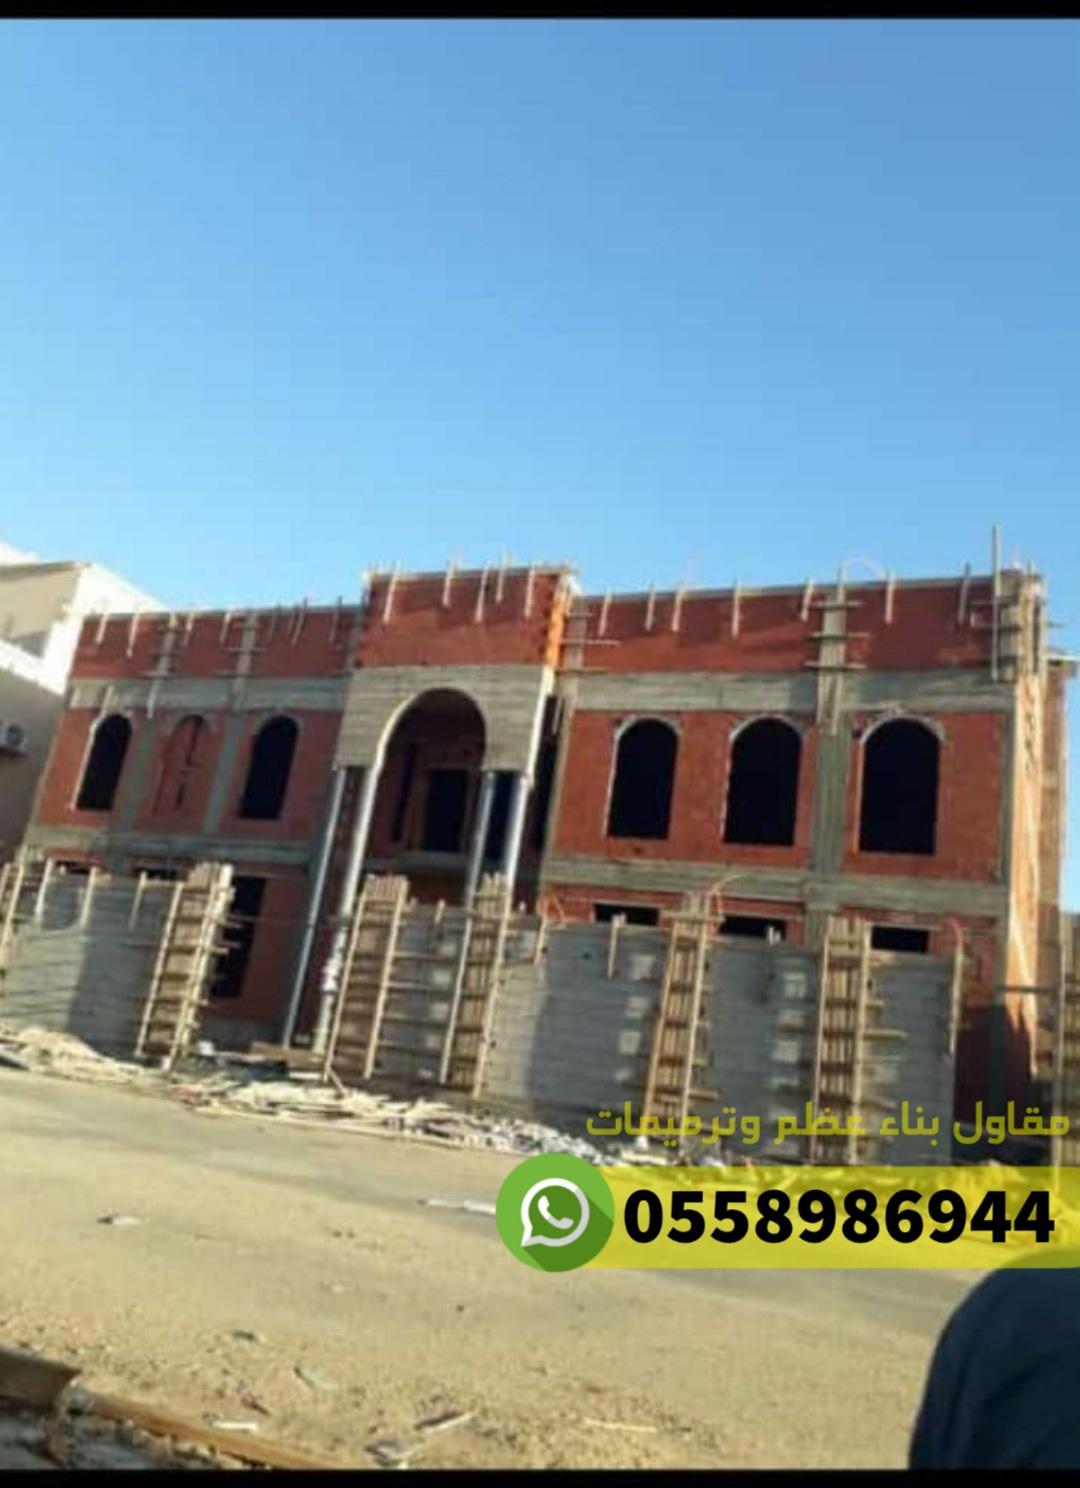 مقاول معماري في جدة, 0558986944 984620257